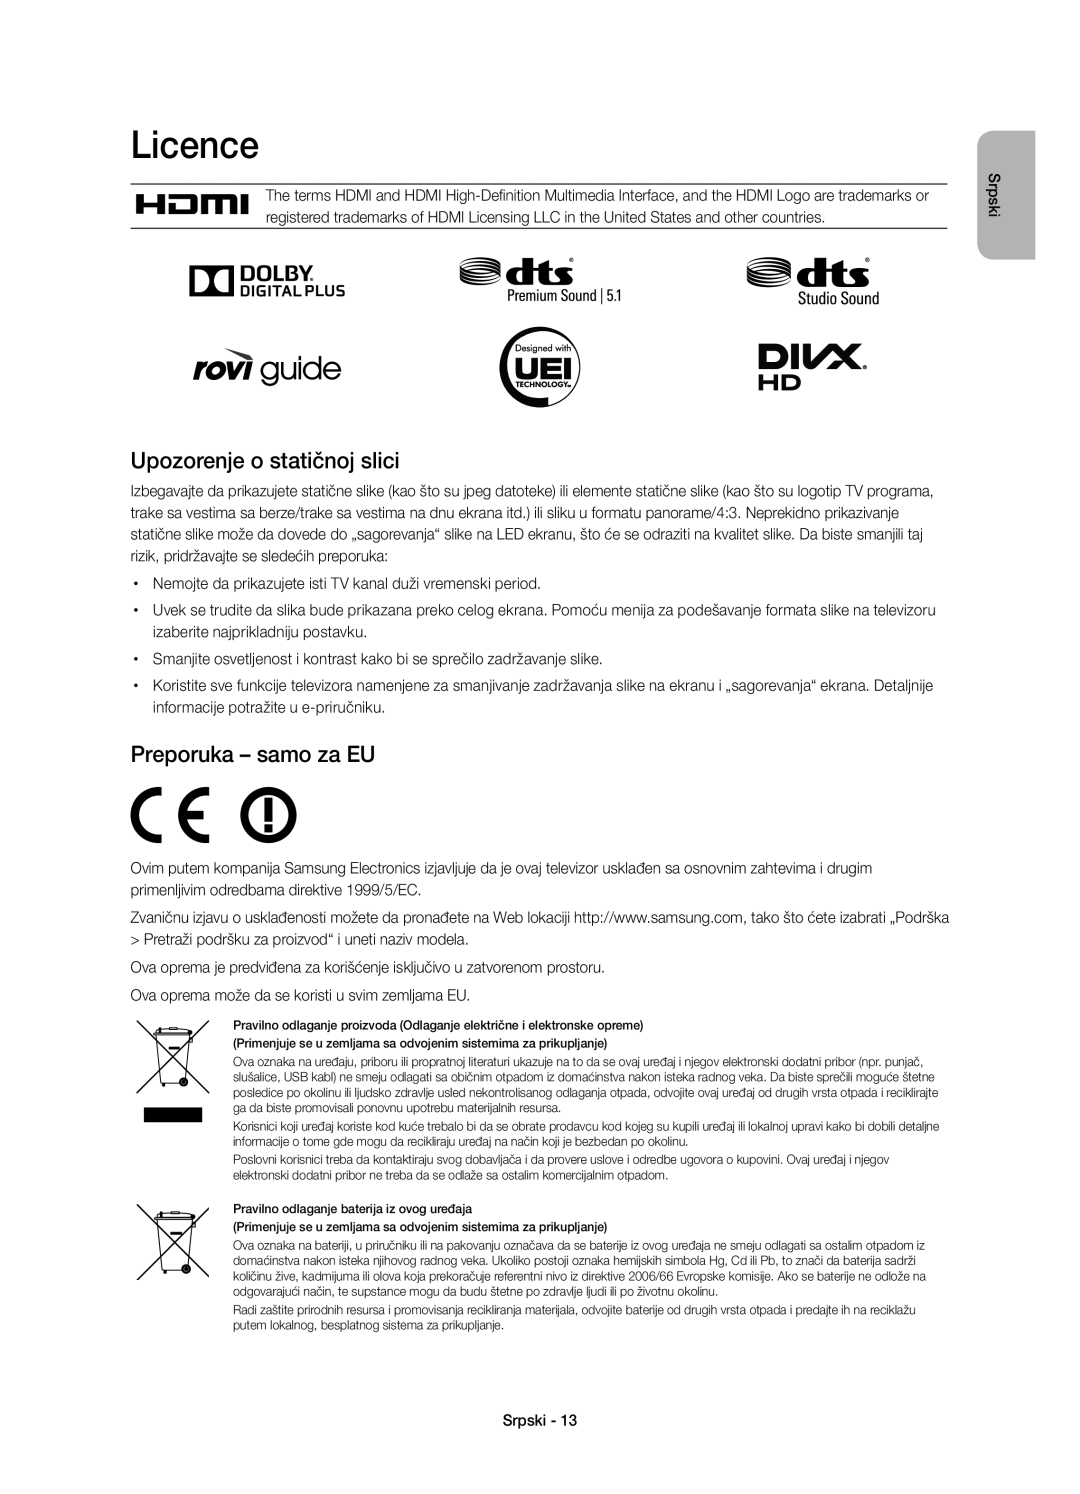 Samsung UE40H6410SSXZF, UE55H6410SSXXH manual Upozorenje o statičnoj slici, Licence, Preporuka - samo za EU, Srpski 